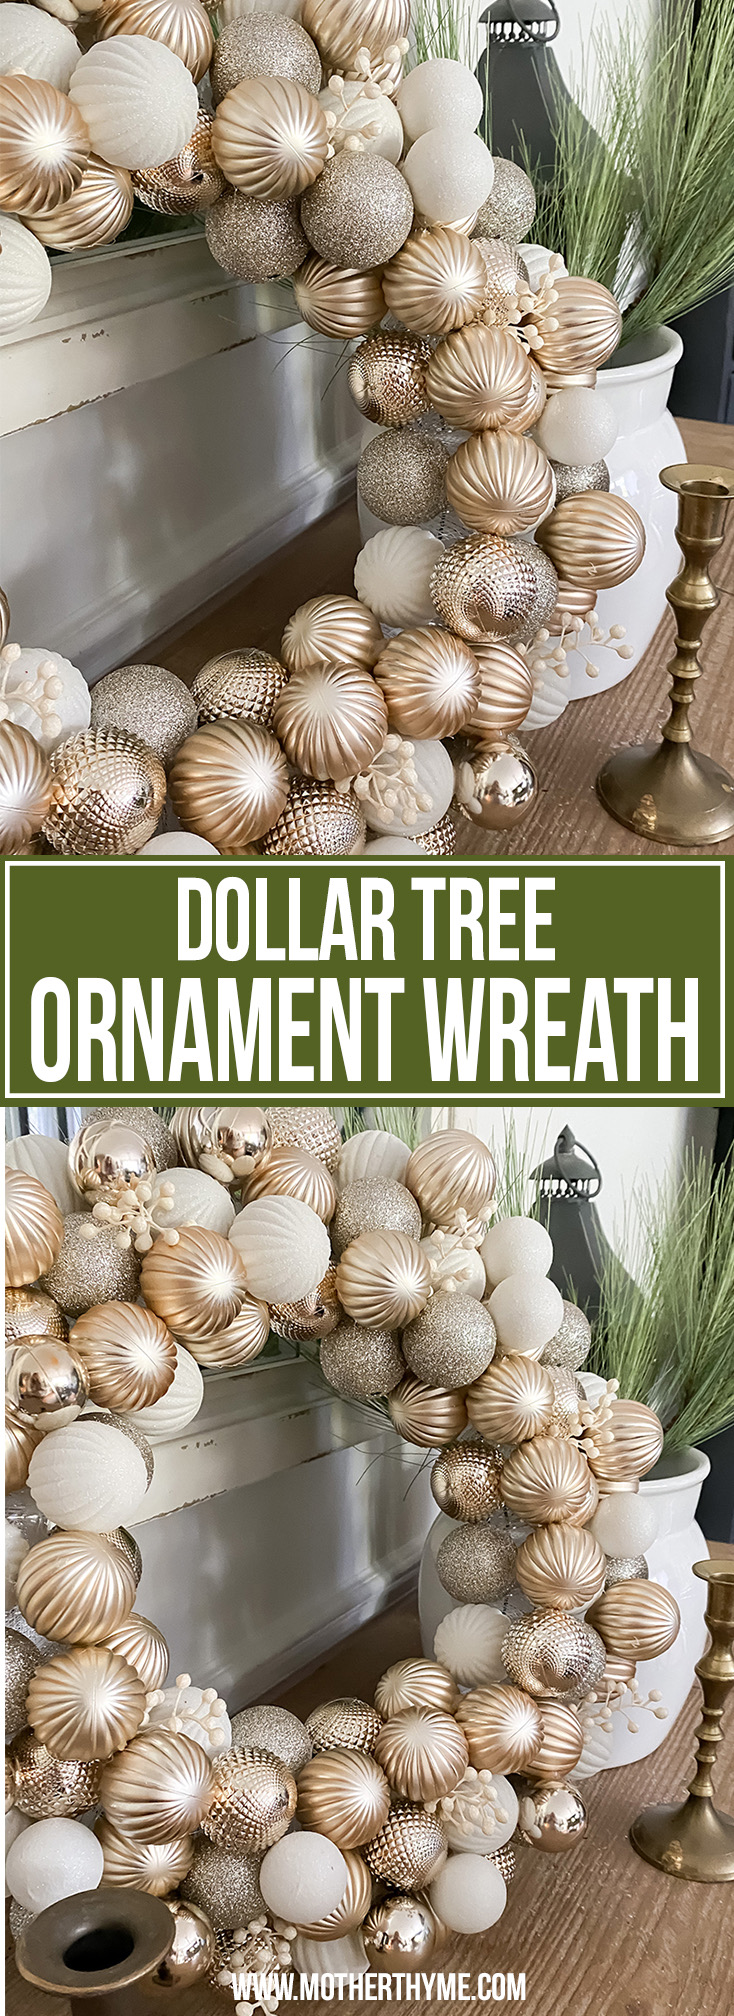 DOLLAR TREE ORNAMENT WREATH